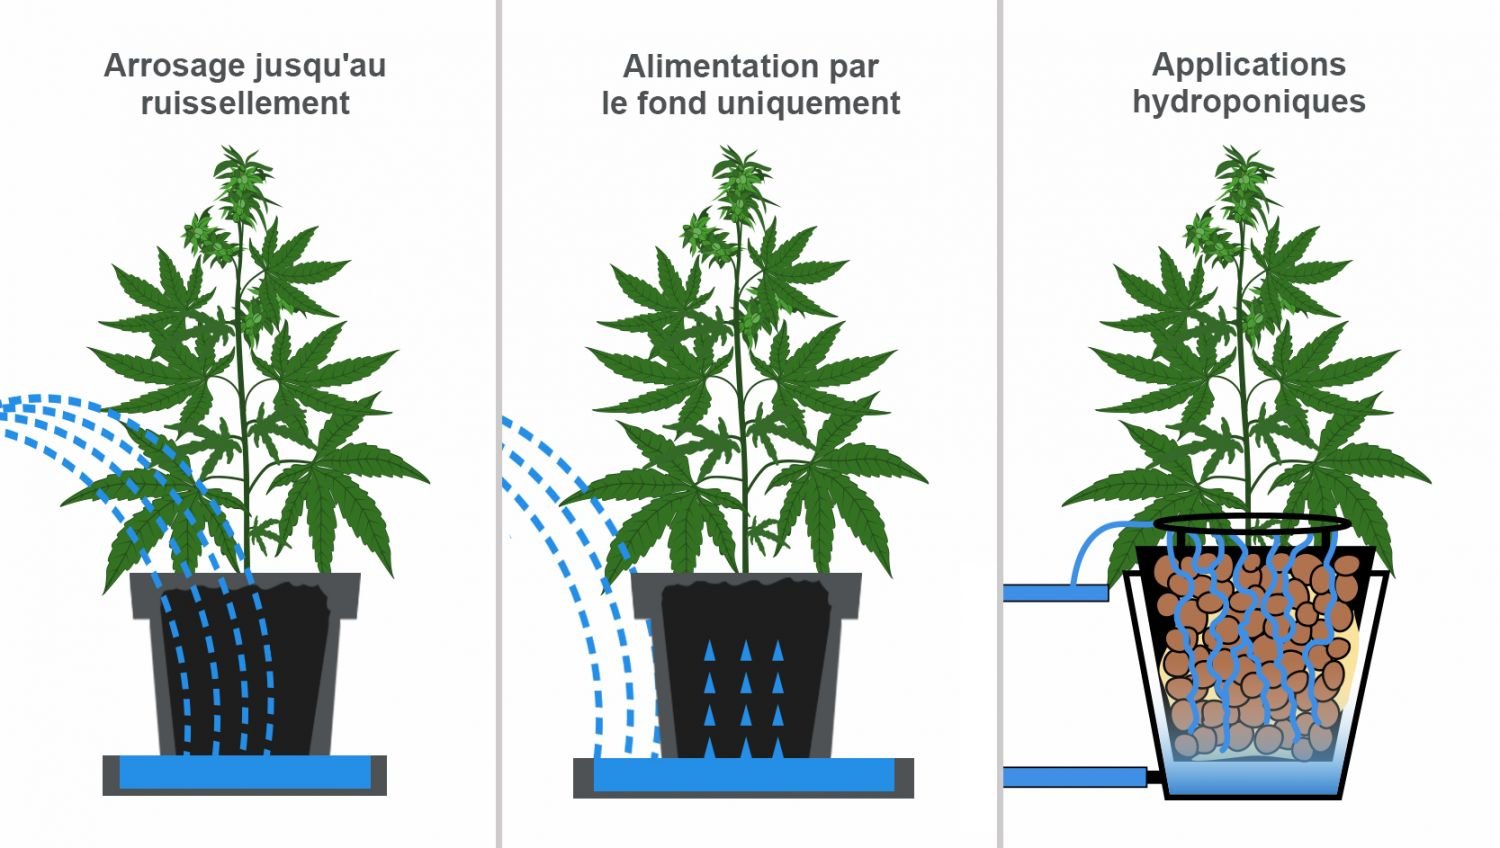 Comment soutenir les plantes de cannabis en plein air - Fast Buds